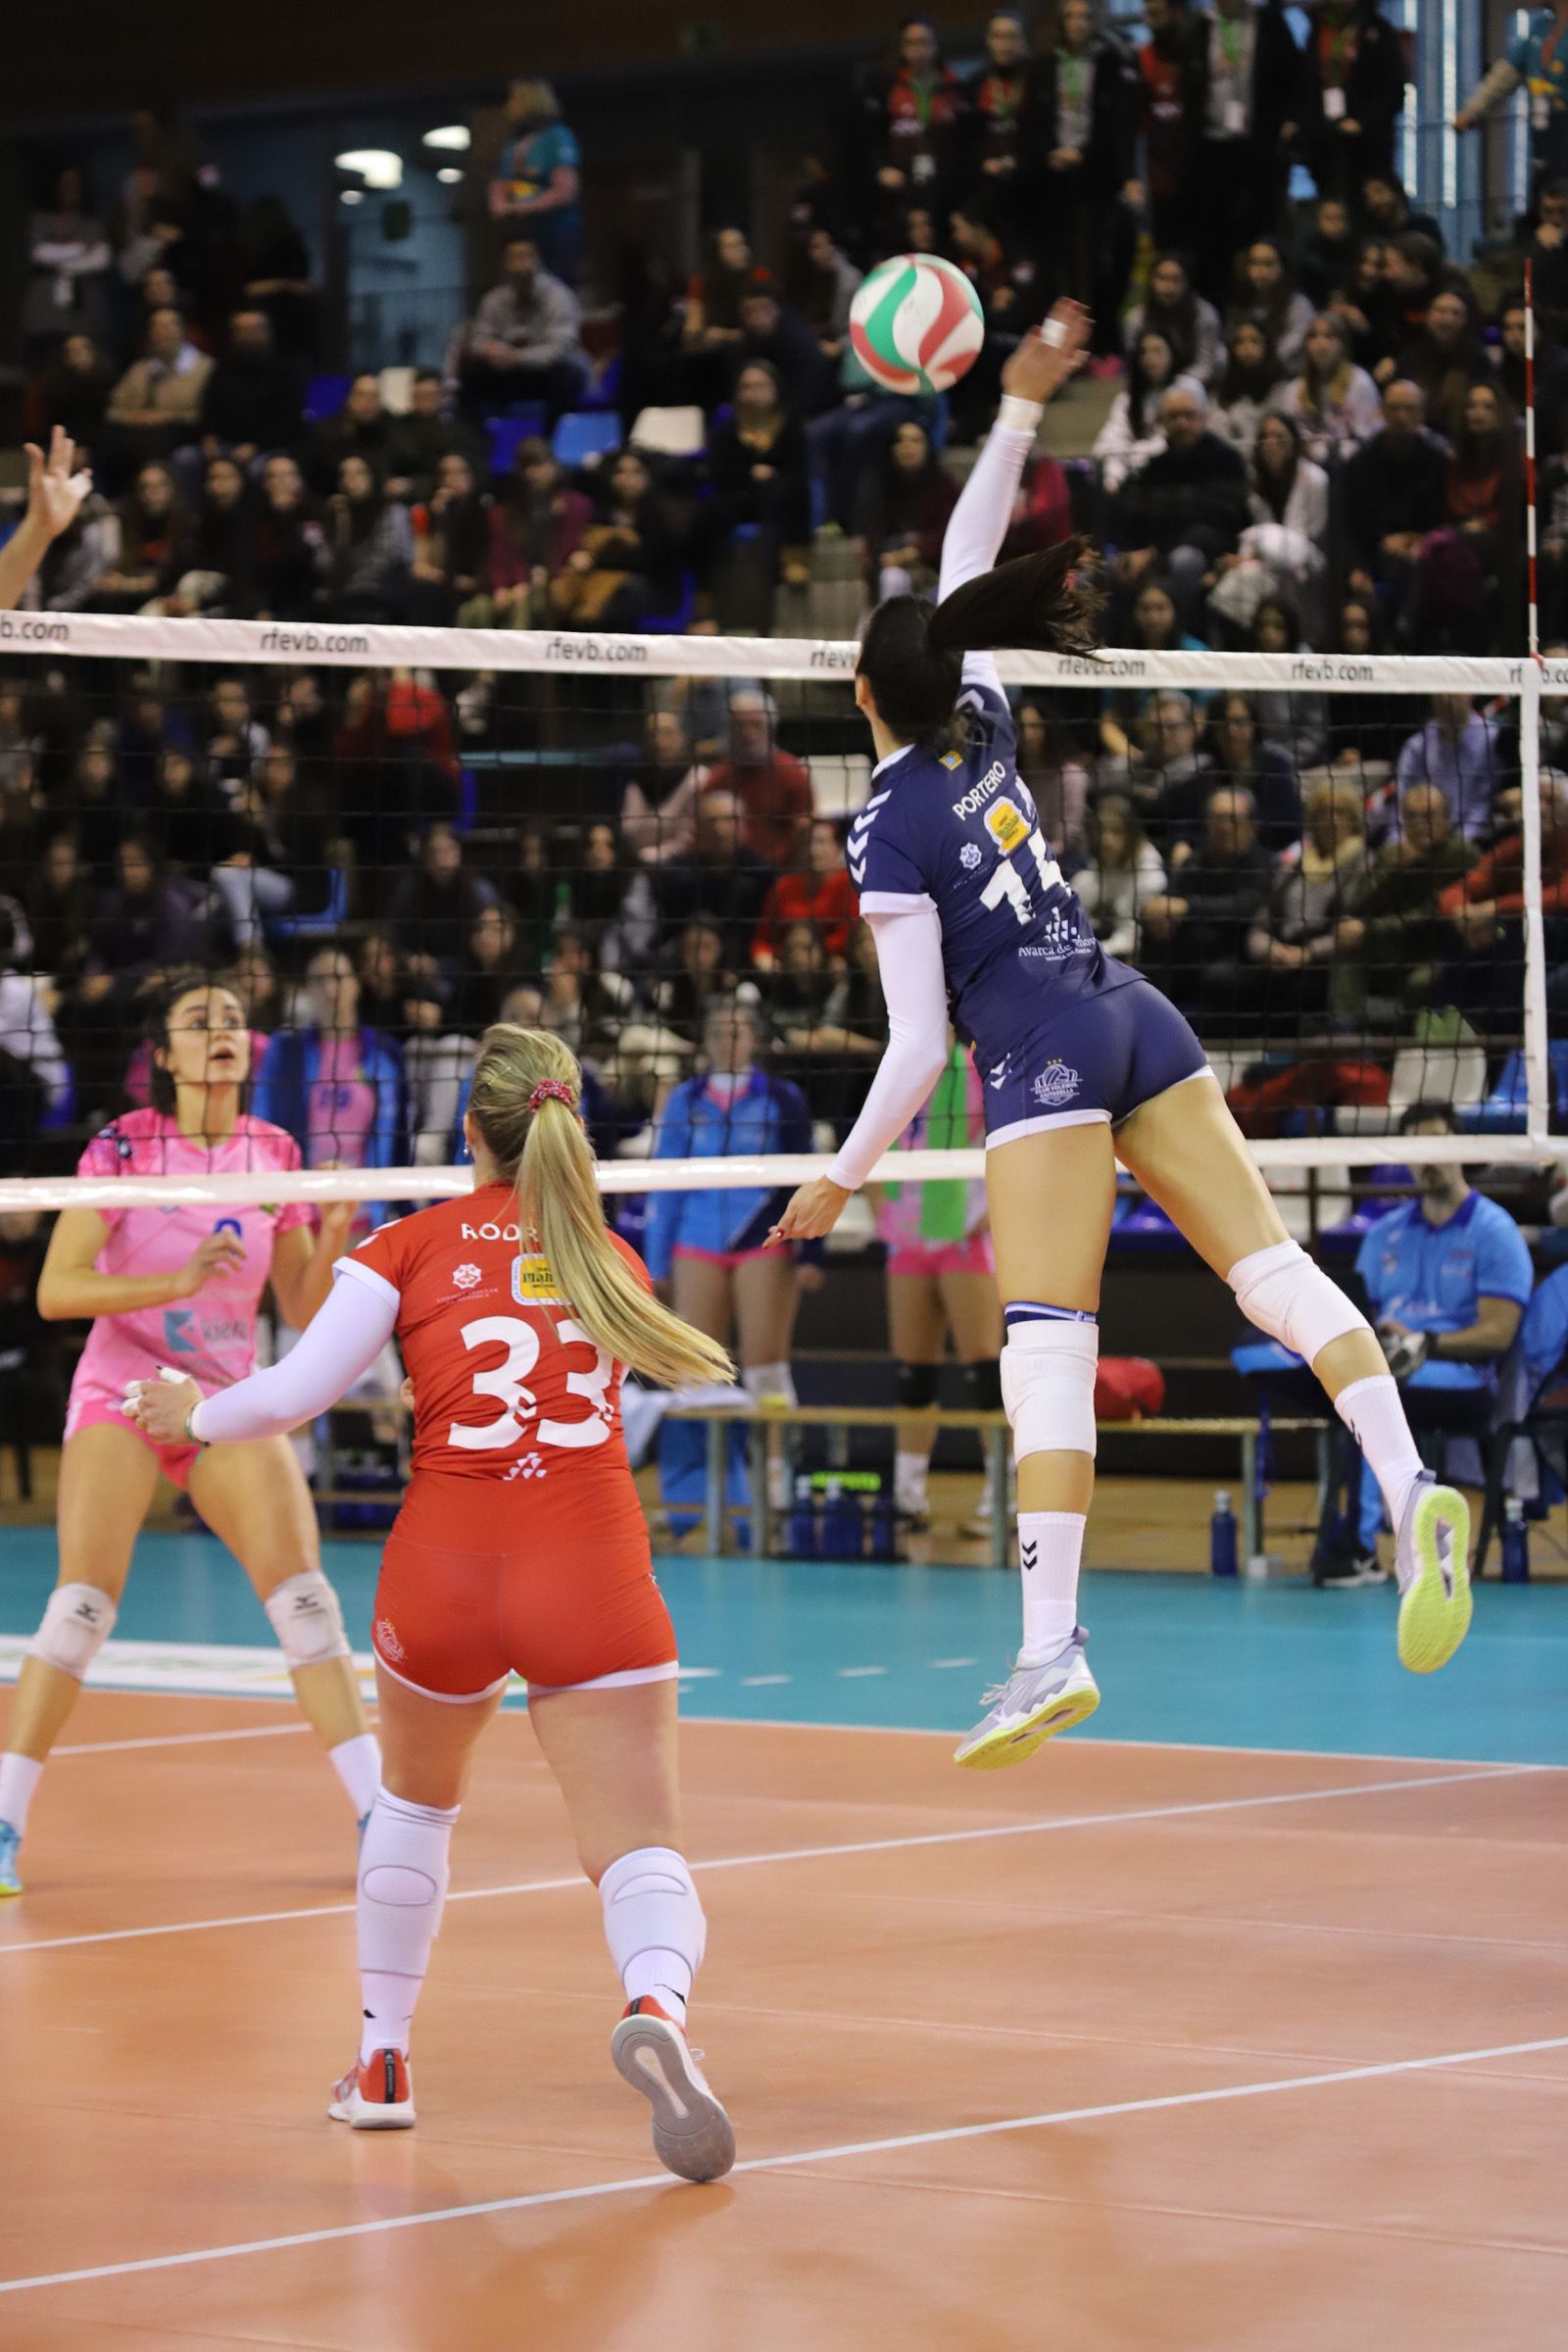 El CV Kiele Socuéllamos i l'Avarca de Menorca han disputat els primers quarts de final de la Copa de la Reina de voleibol que es disputa a Sant Cugat. FOTO: Mireia Norberto